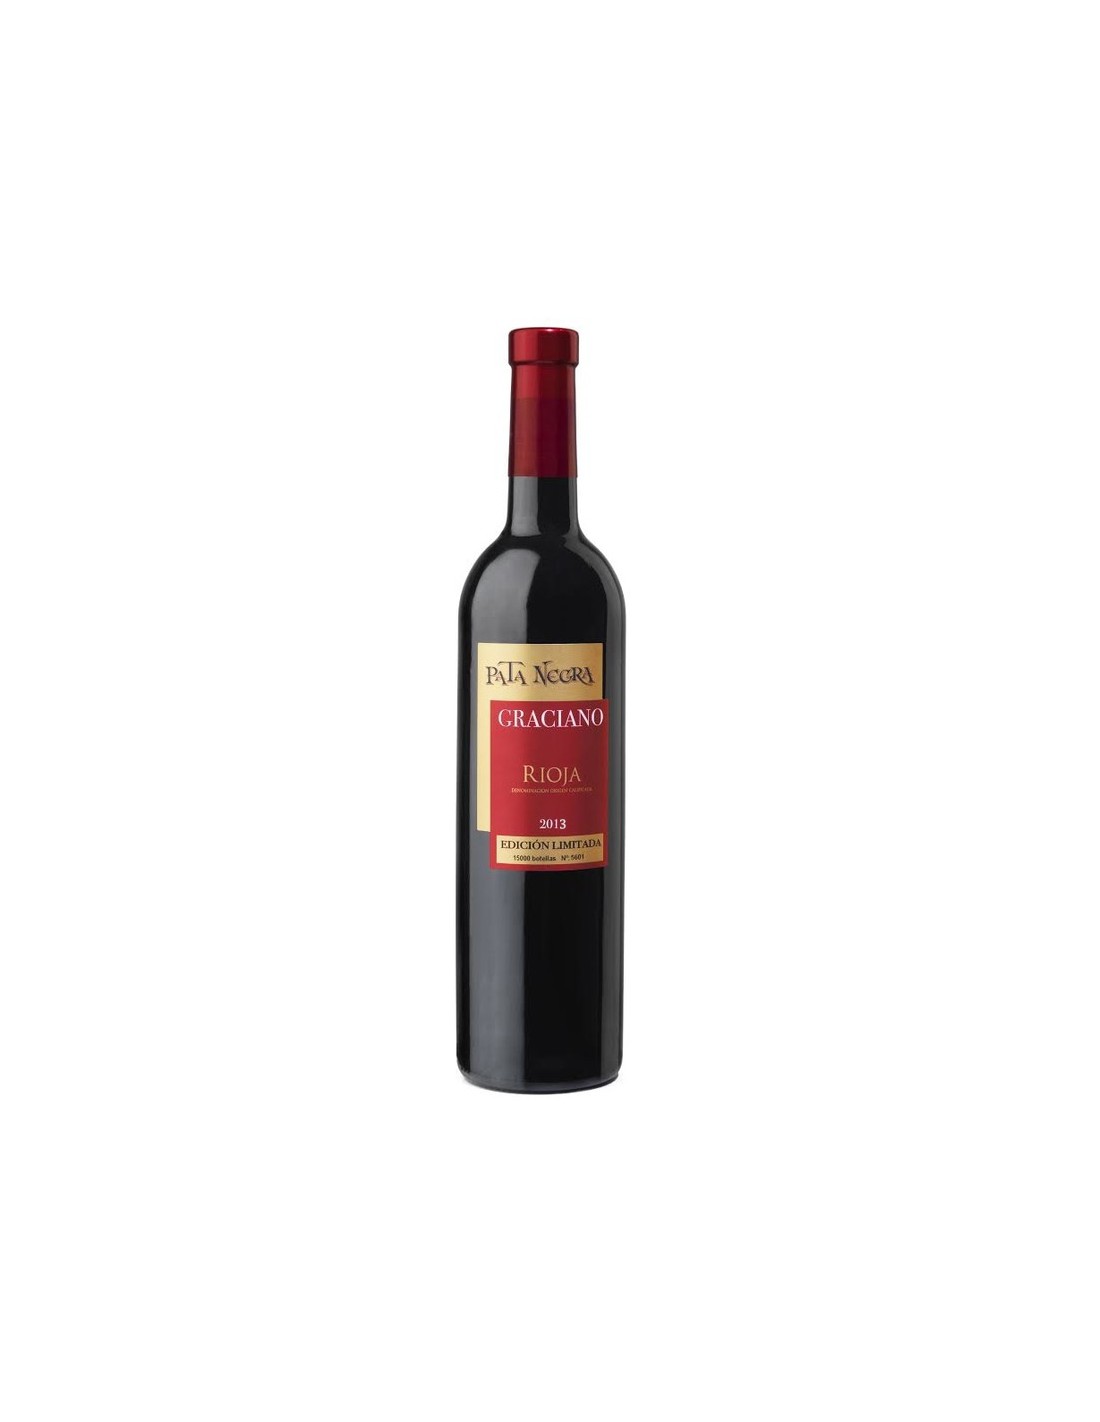 Vin rosu sec, Graciano, Pata Negra Rioja, 0.75L, Spania alcooldiscount.ro